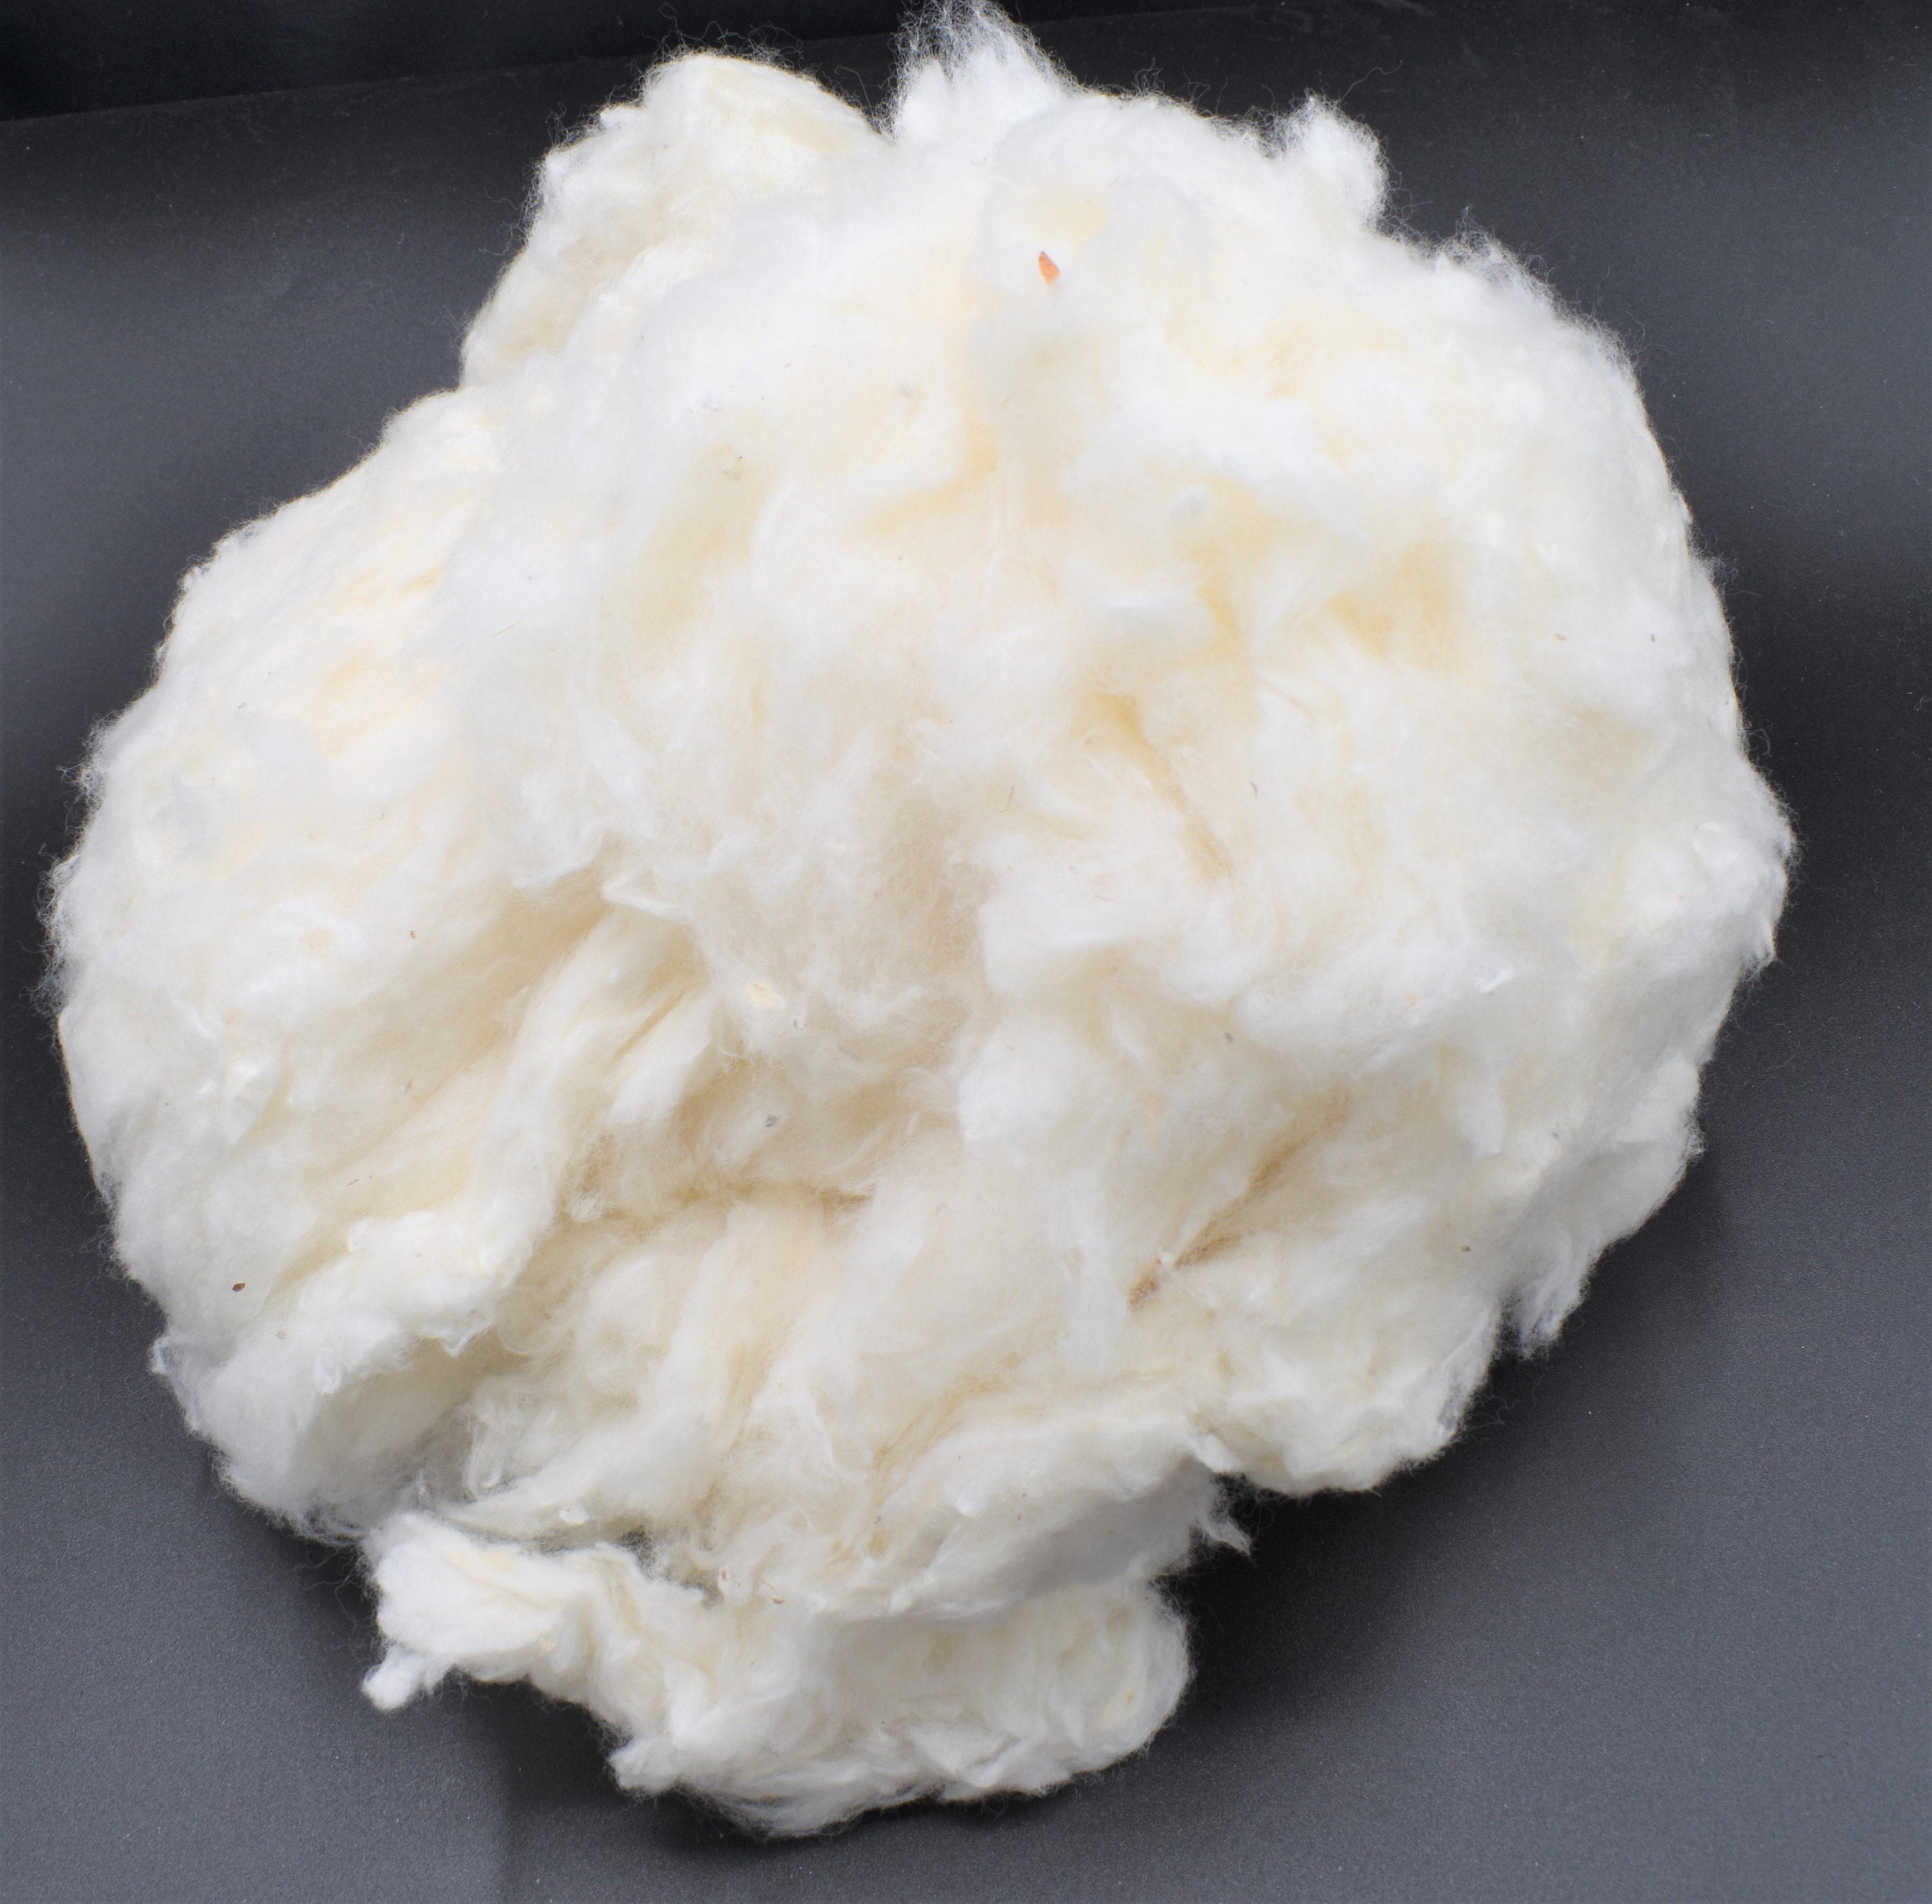 Raw Cotton Filler / Stuffing - 2 oz, 4 oz, 8 oz, 16 oz (Please